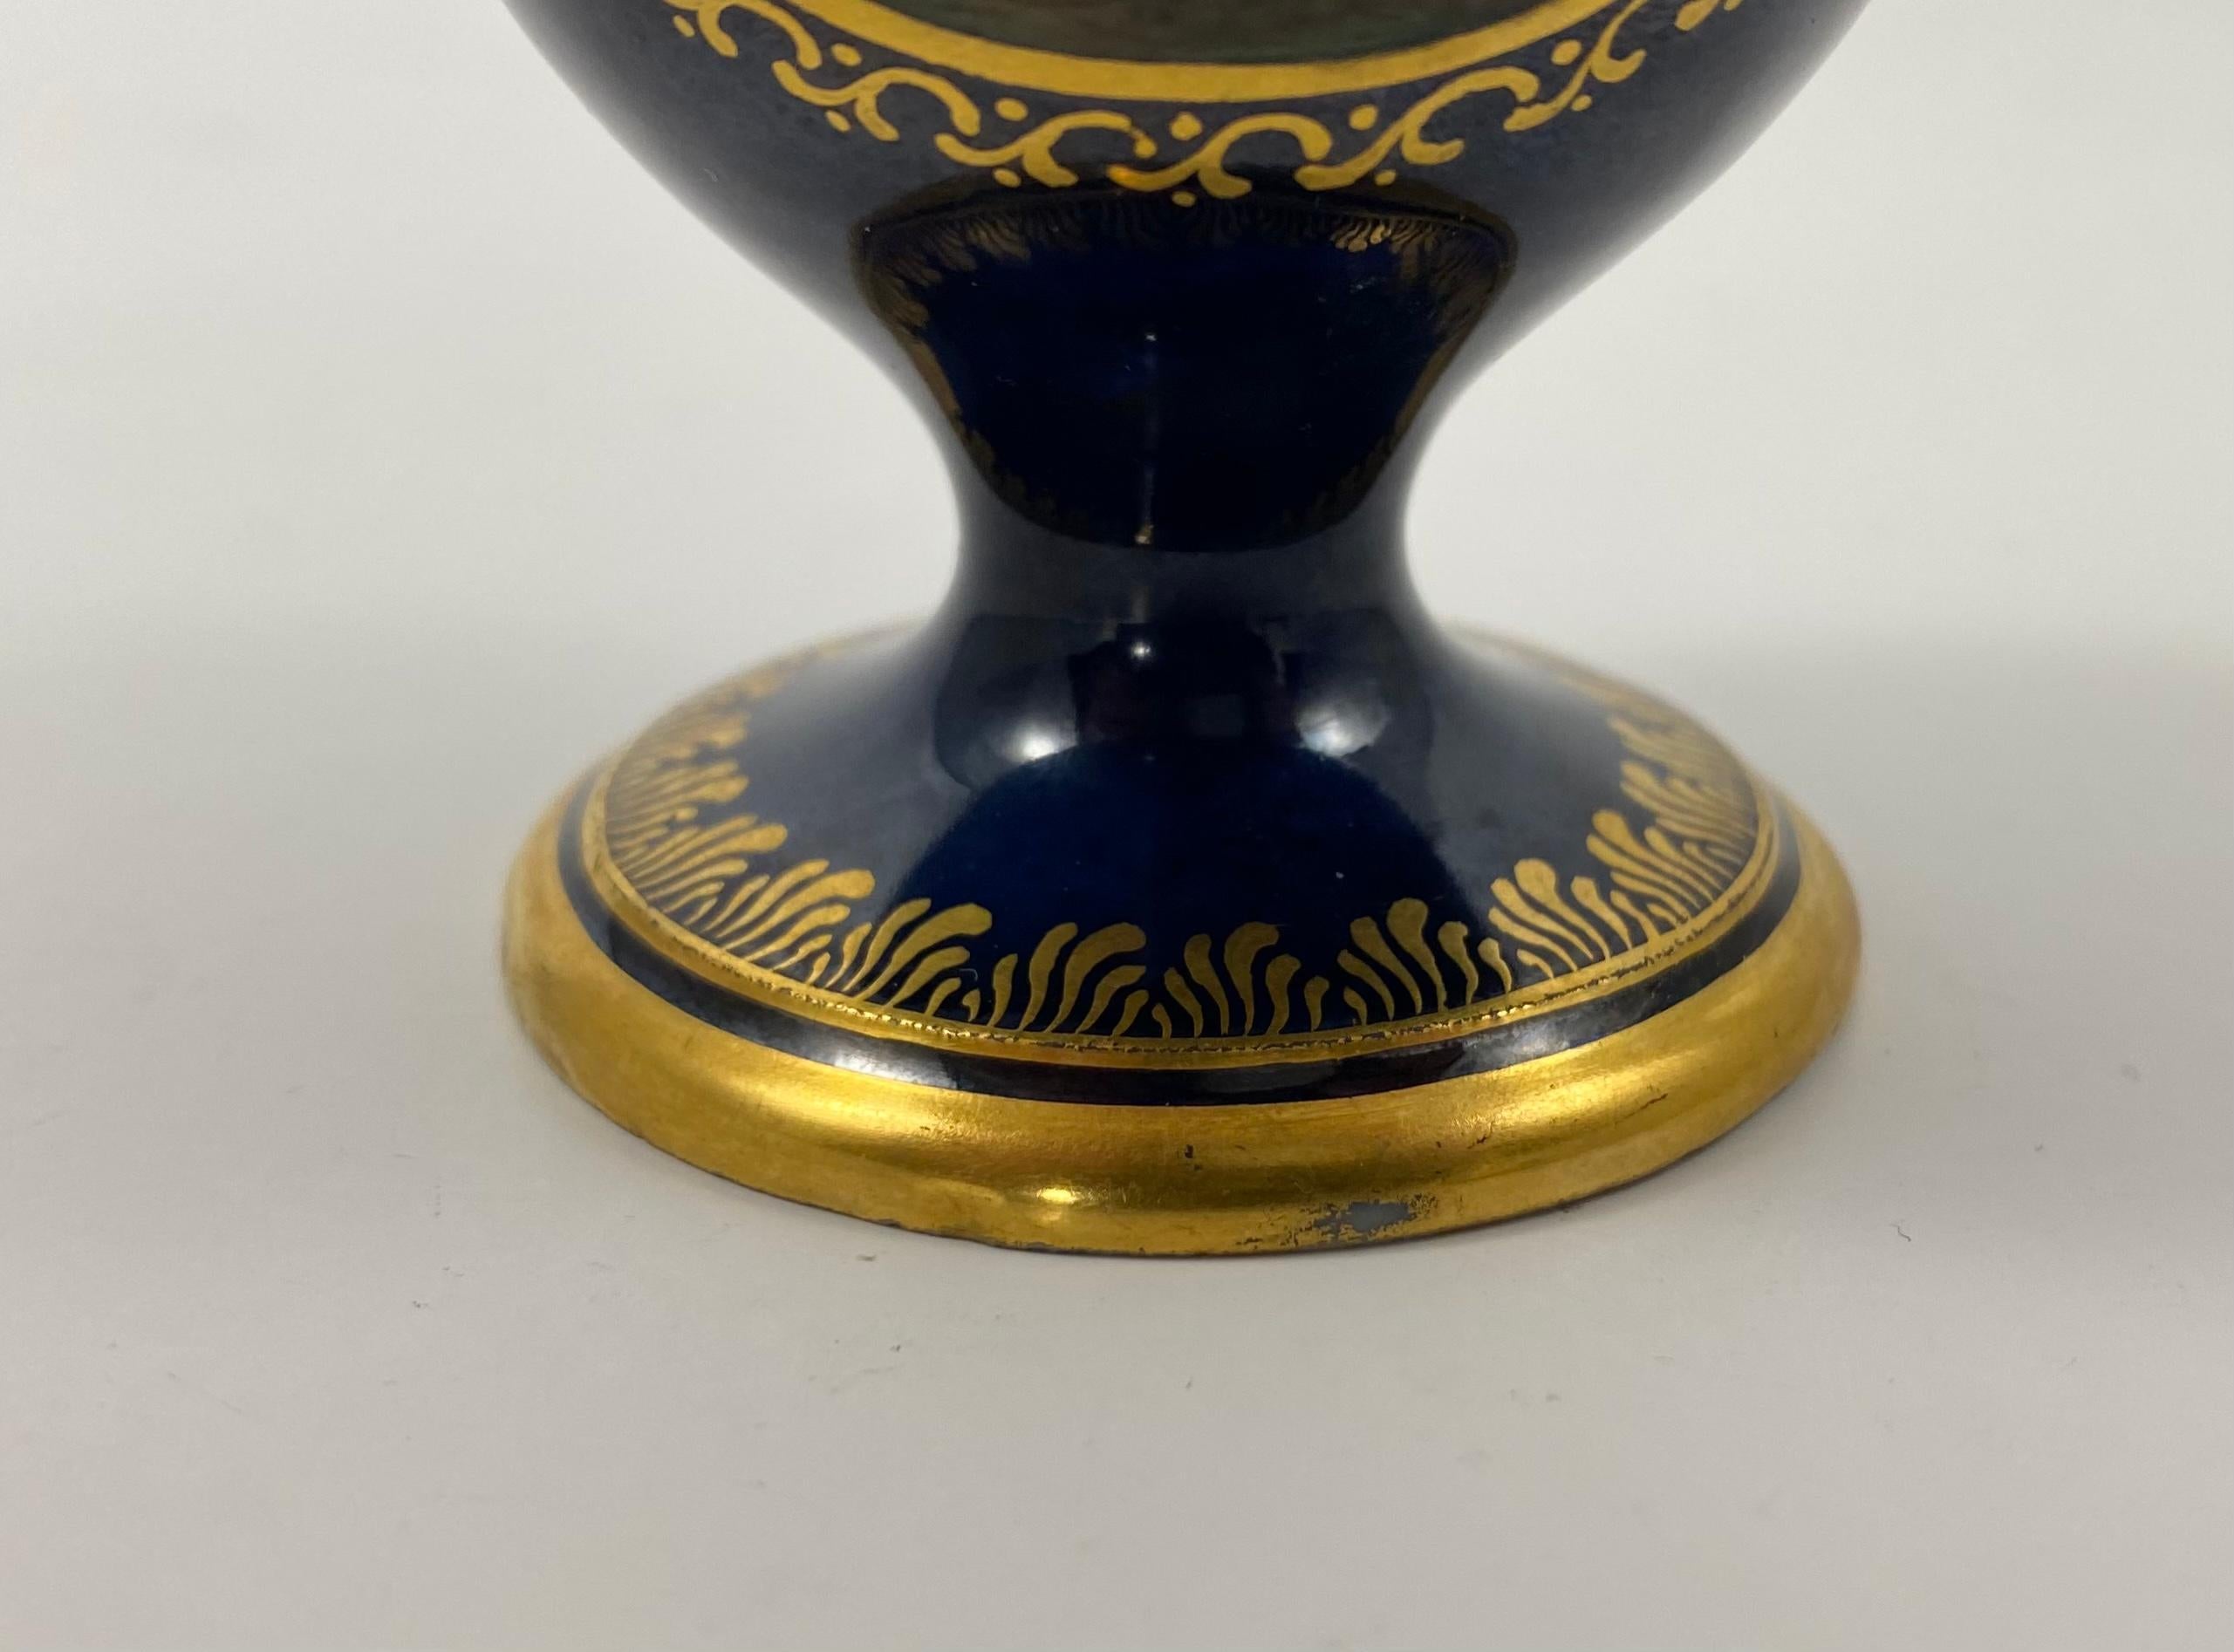 Meissen Porcelain Scent Bottle, c. 1790, Marcolini Period 6